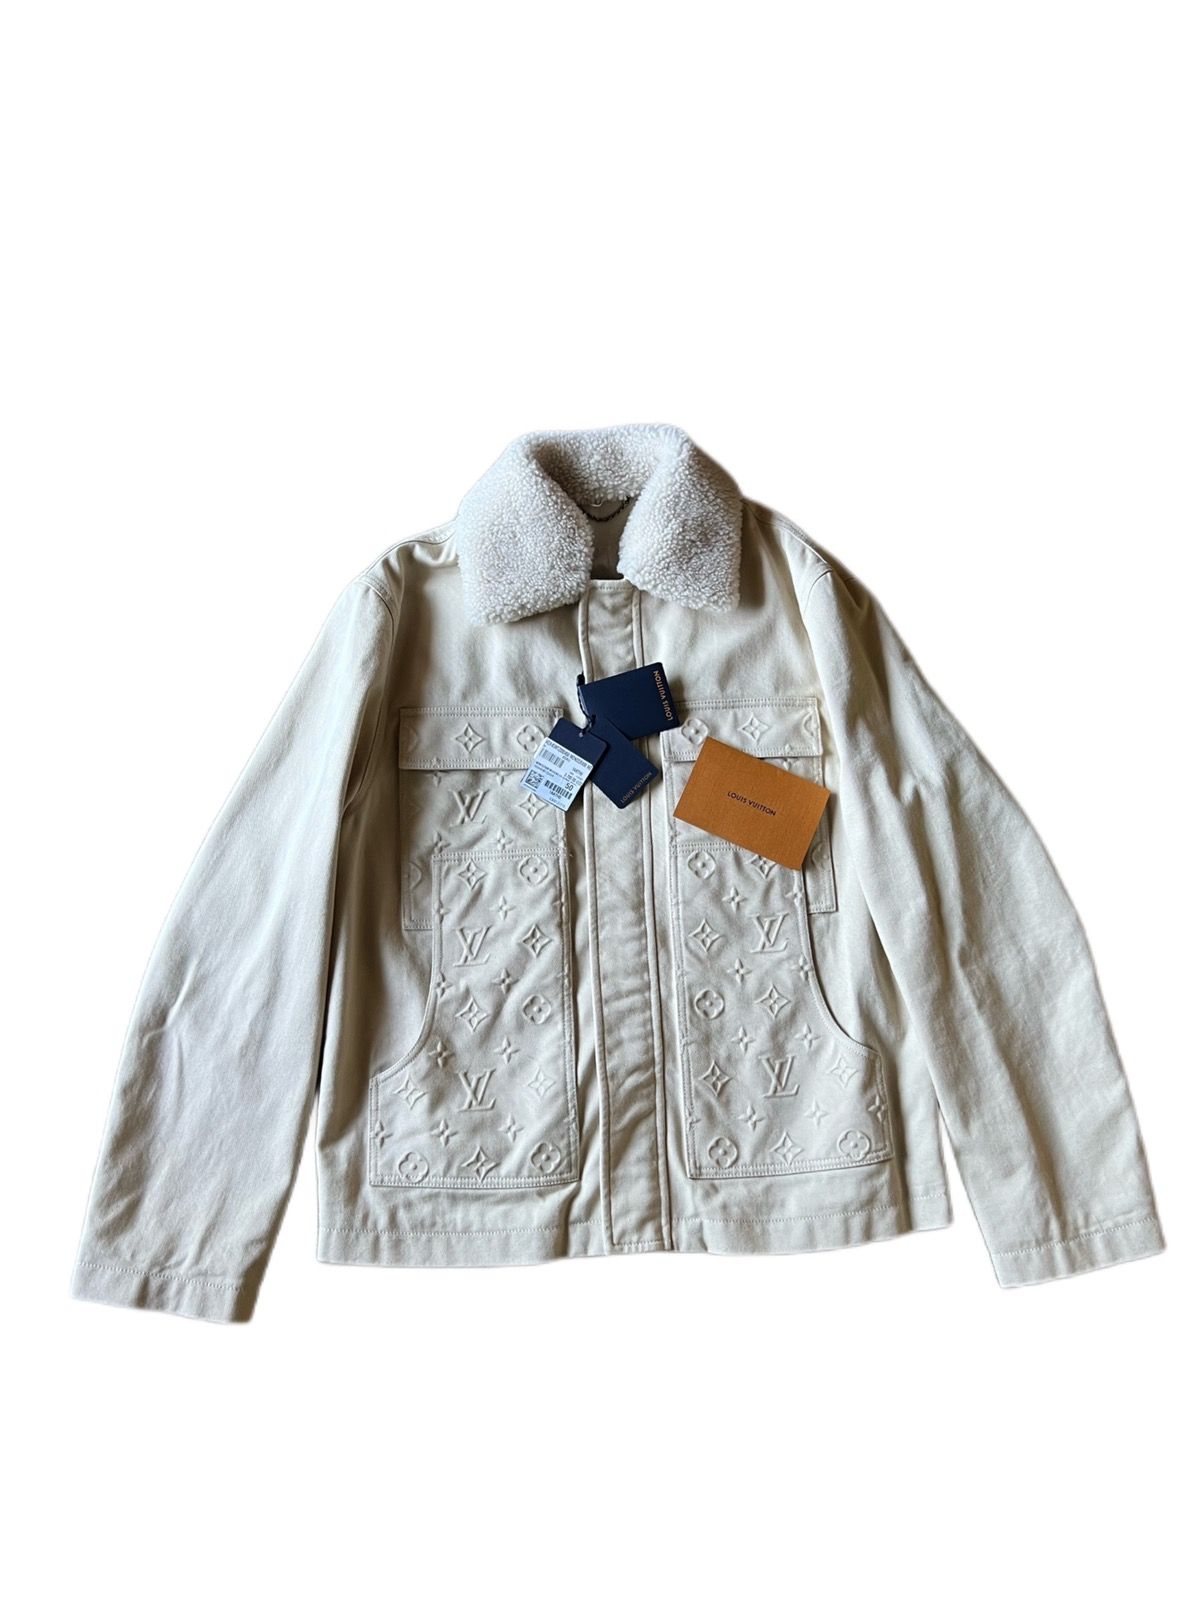 monogram workwear jacket